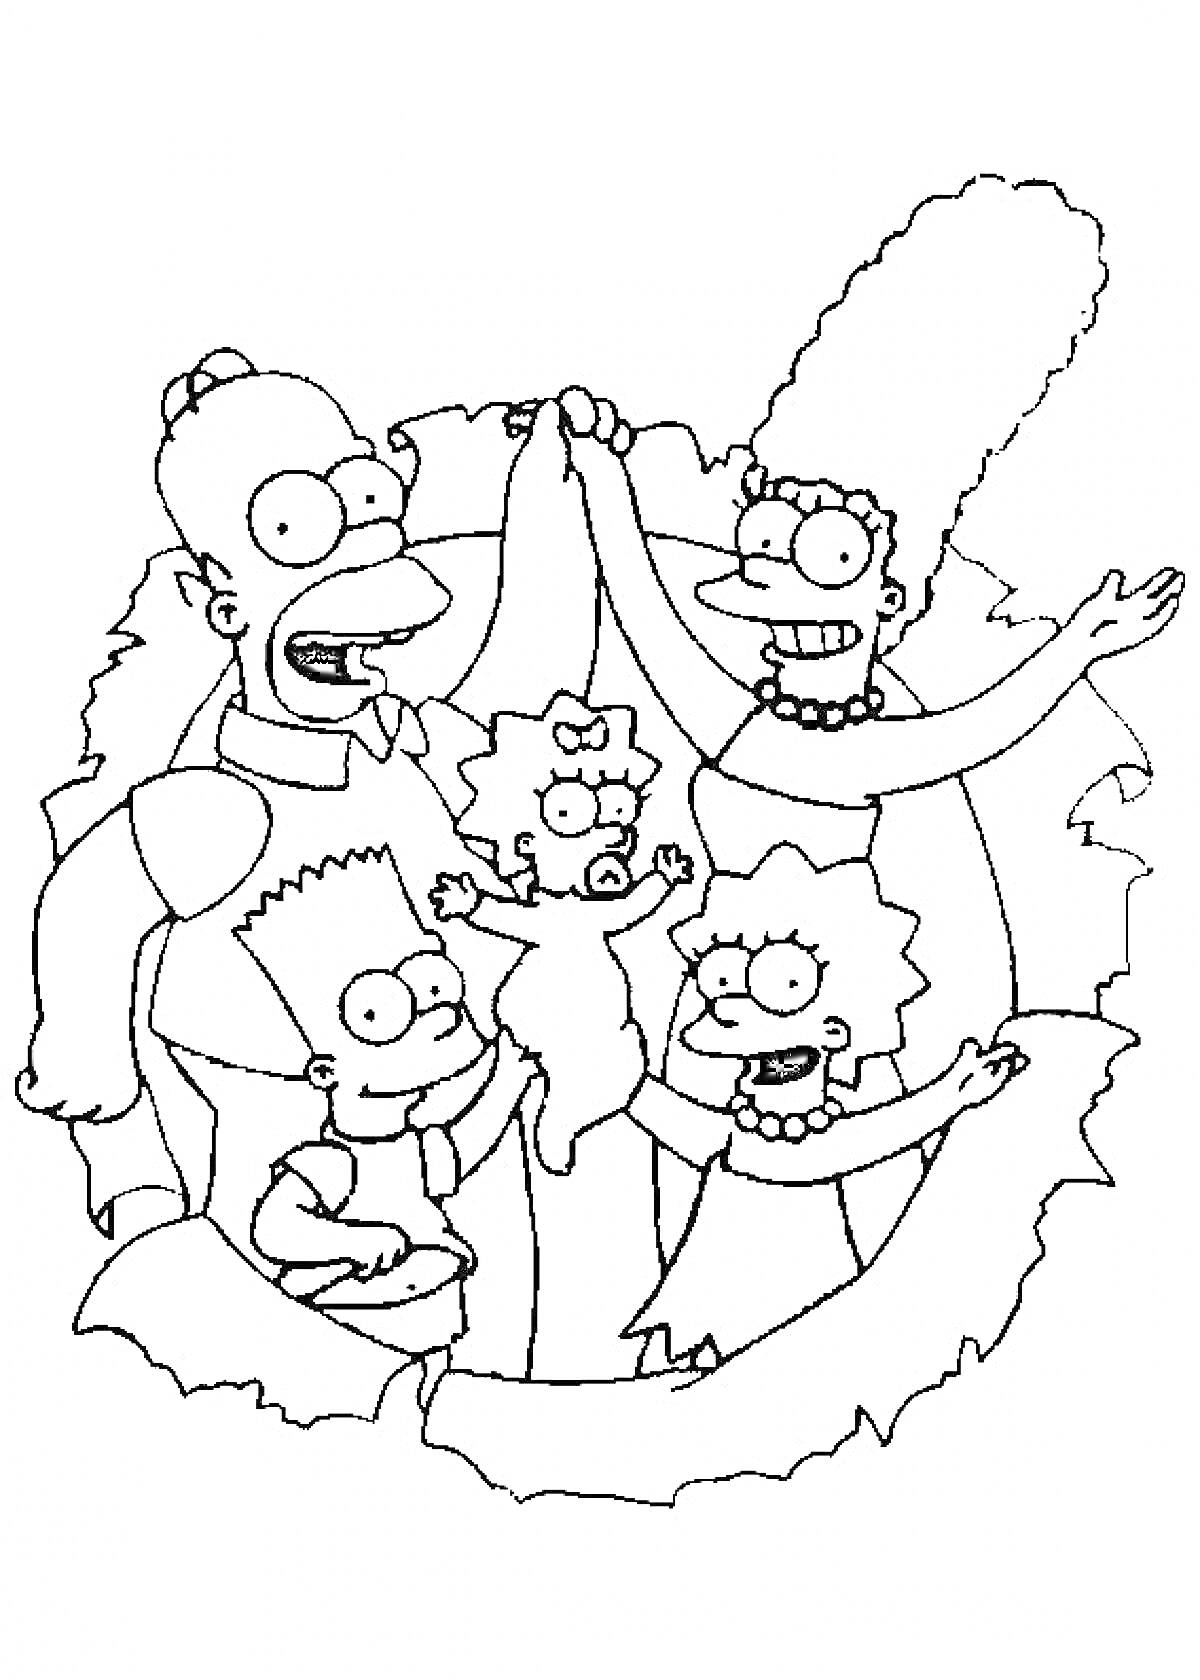 Семья Симпсонов (Гомер, Мардж, Барт, Лиза и Мэгги), стоят вместе, держат друг друга за руки, фонетической формы